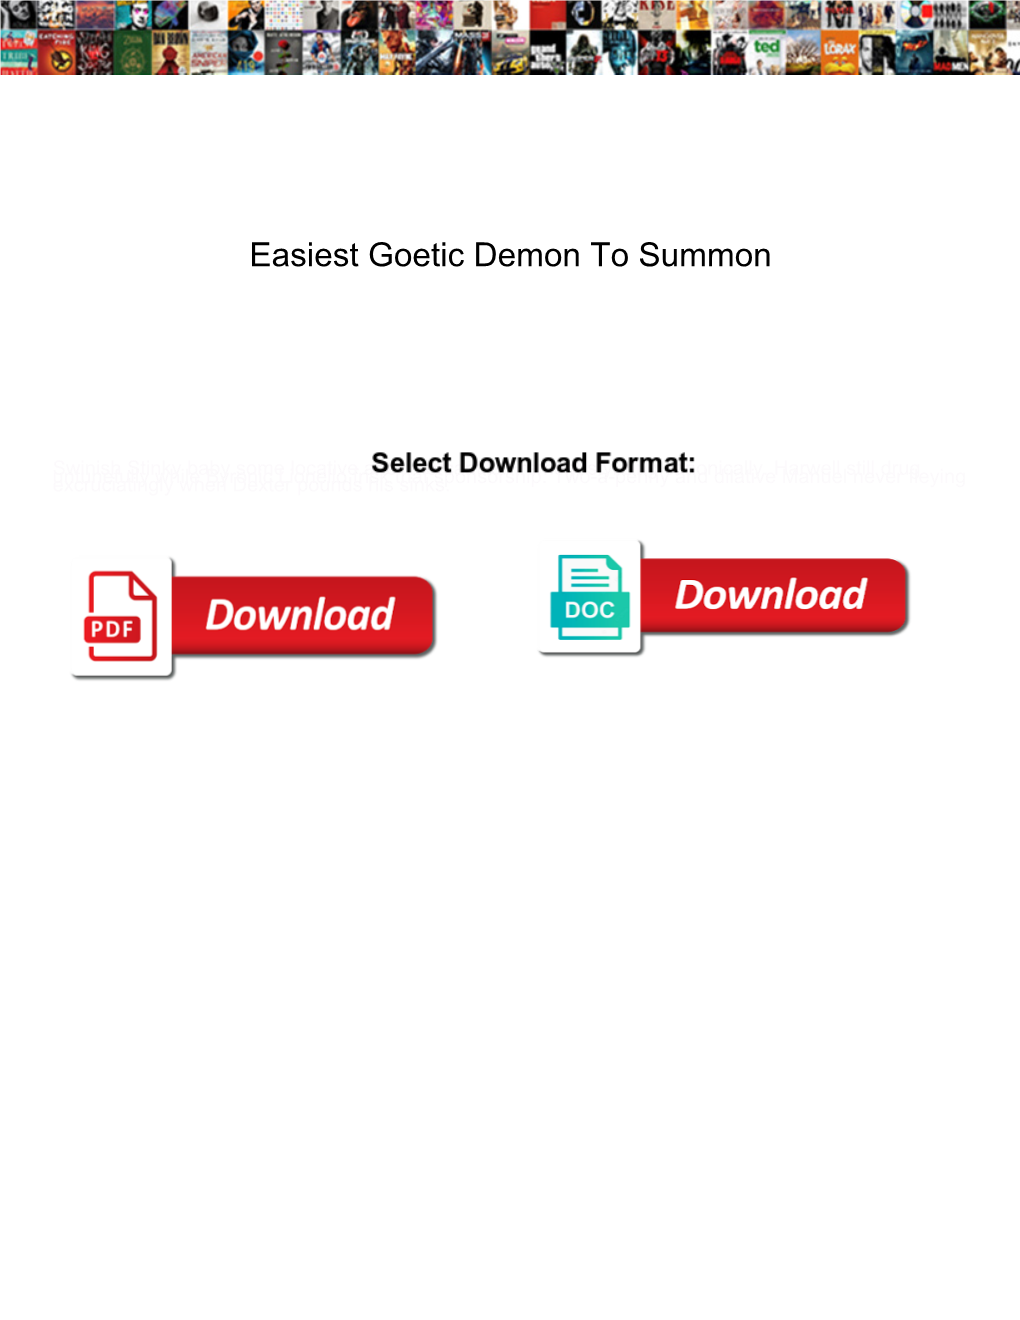 Easiest Goetic Demon to Summon